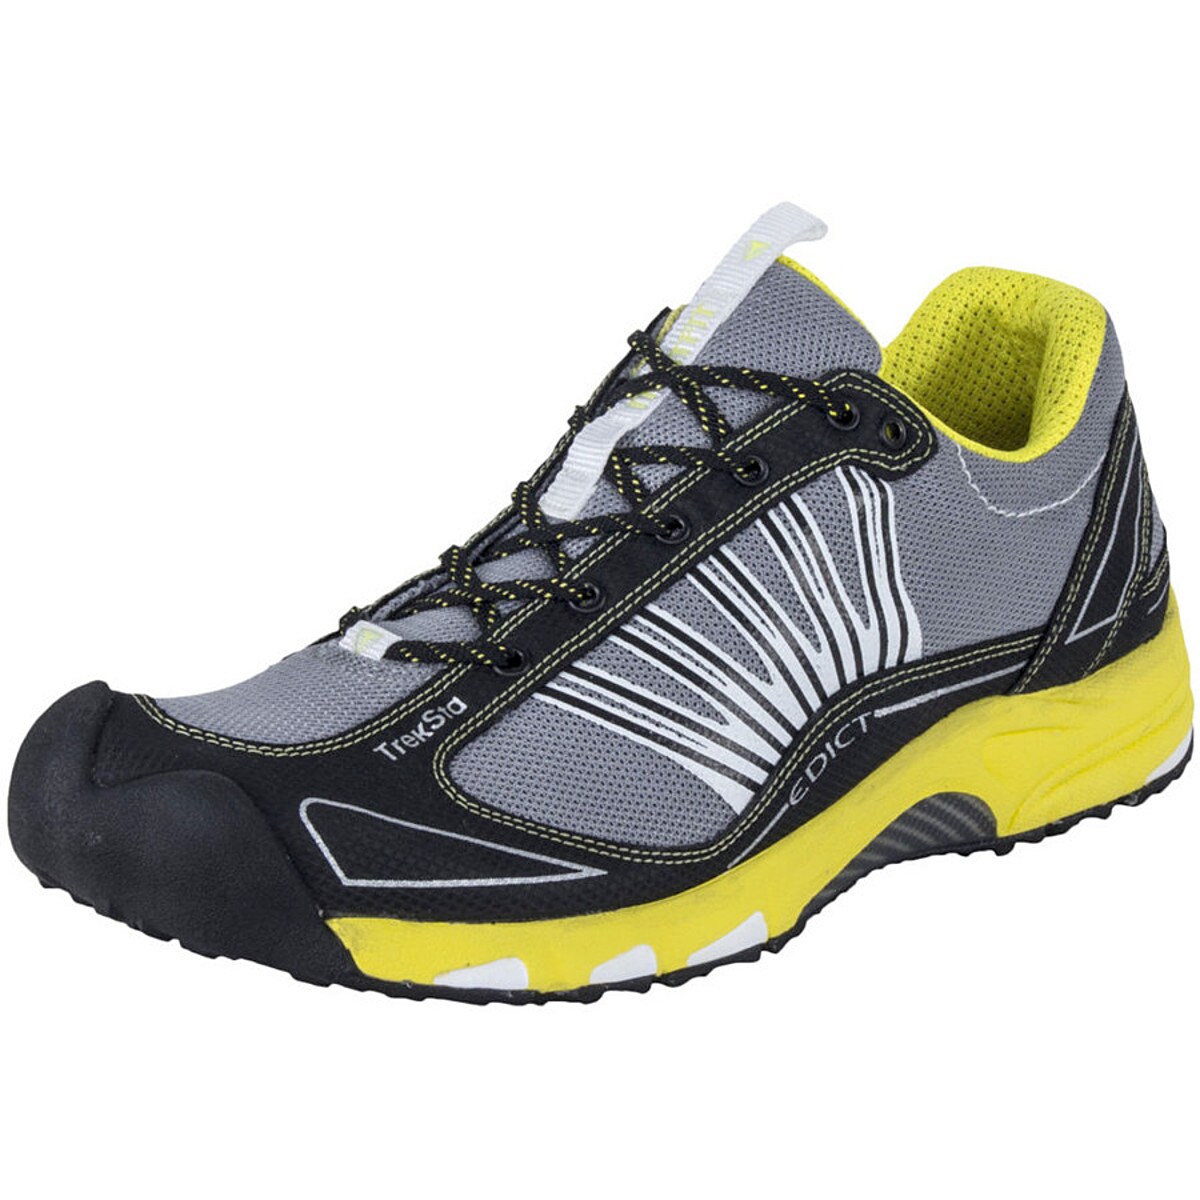 TrekSta Edict II Trail Running Shoe - Men's - Men